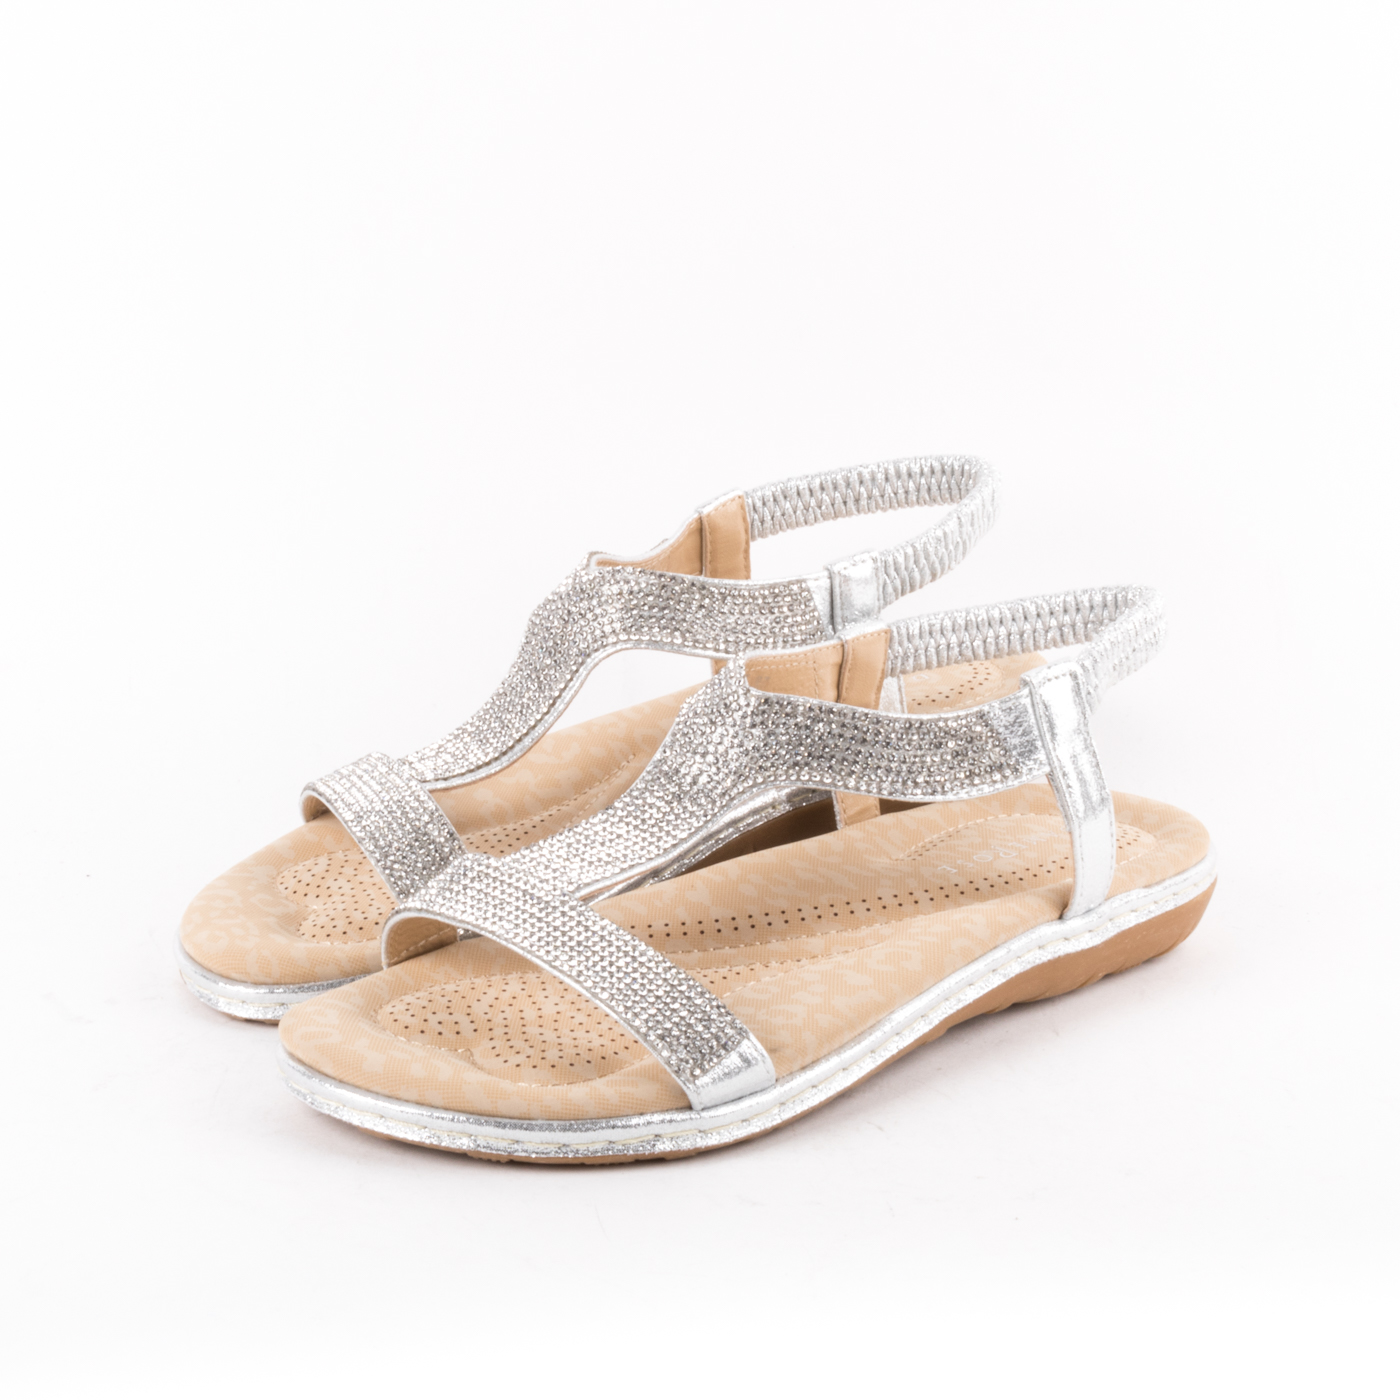 Damerose - Sandali con brillantini e cinturino elastico sul tallone –  Argento, Nero - MitShopping - Abbigliamento e scarpe